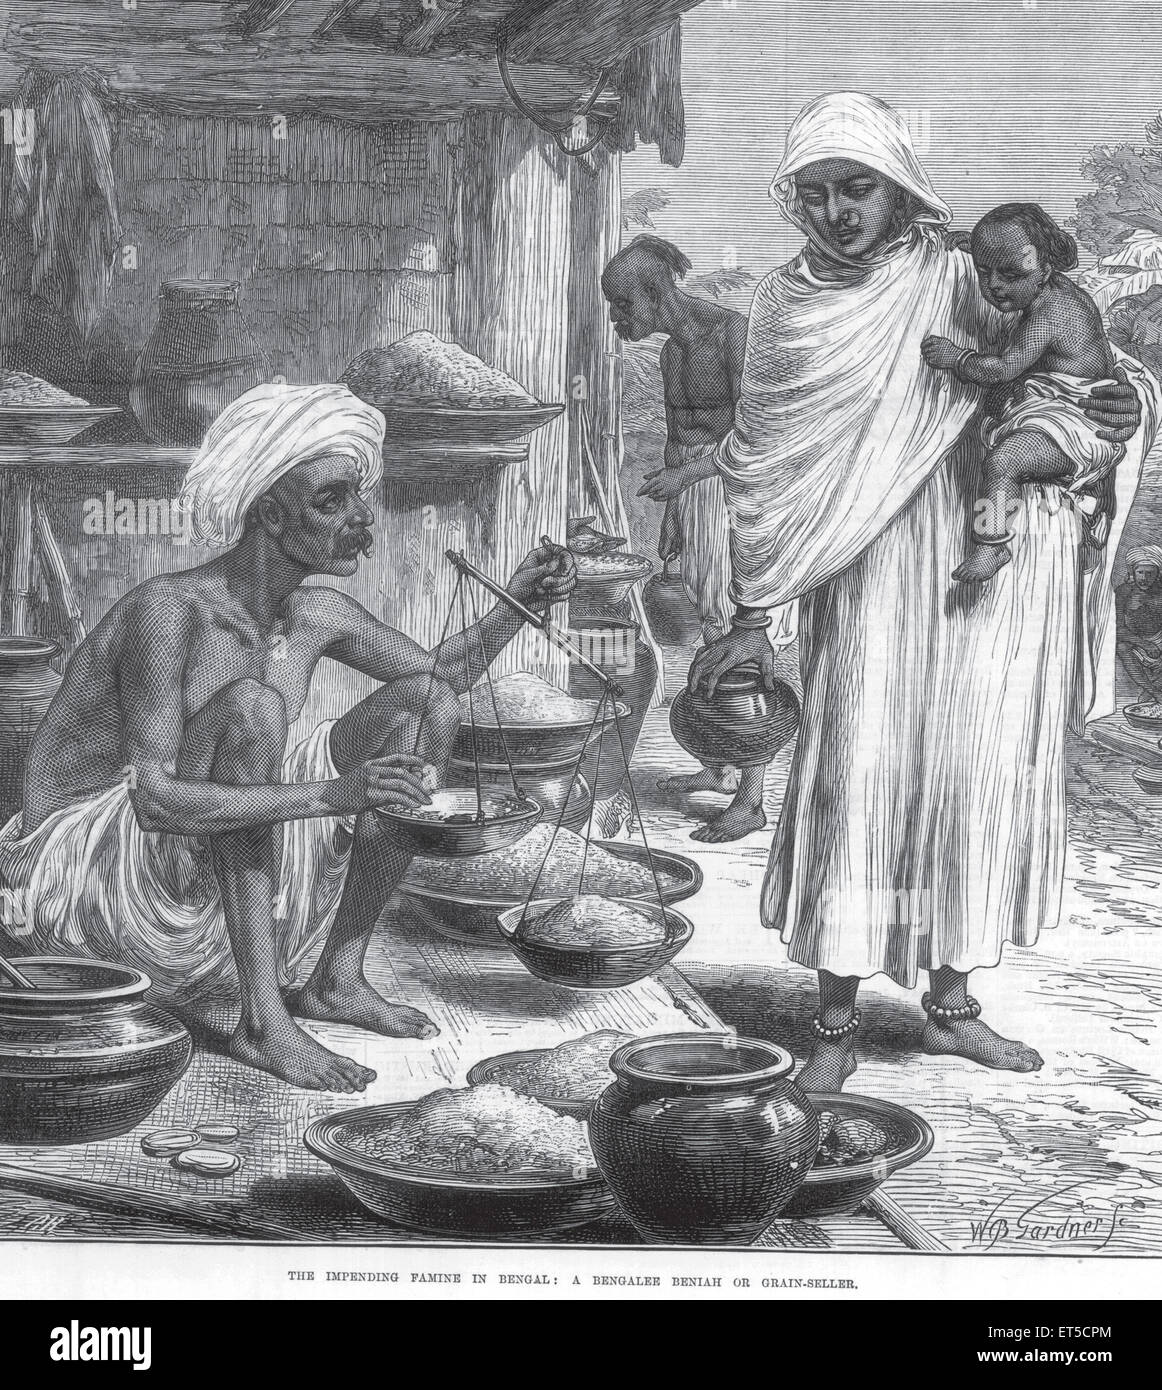 Vista generale imminente carestia nel Bengala un Bengalee Beniah Bengalese o venditore di grano ; Bengala Occidentale ; India Foto Stock